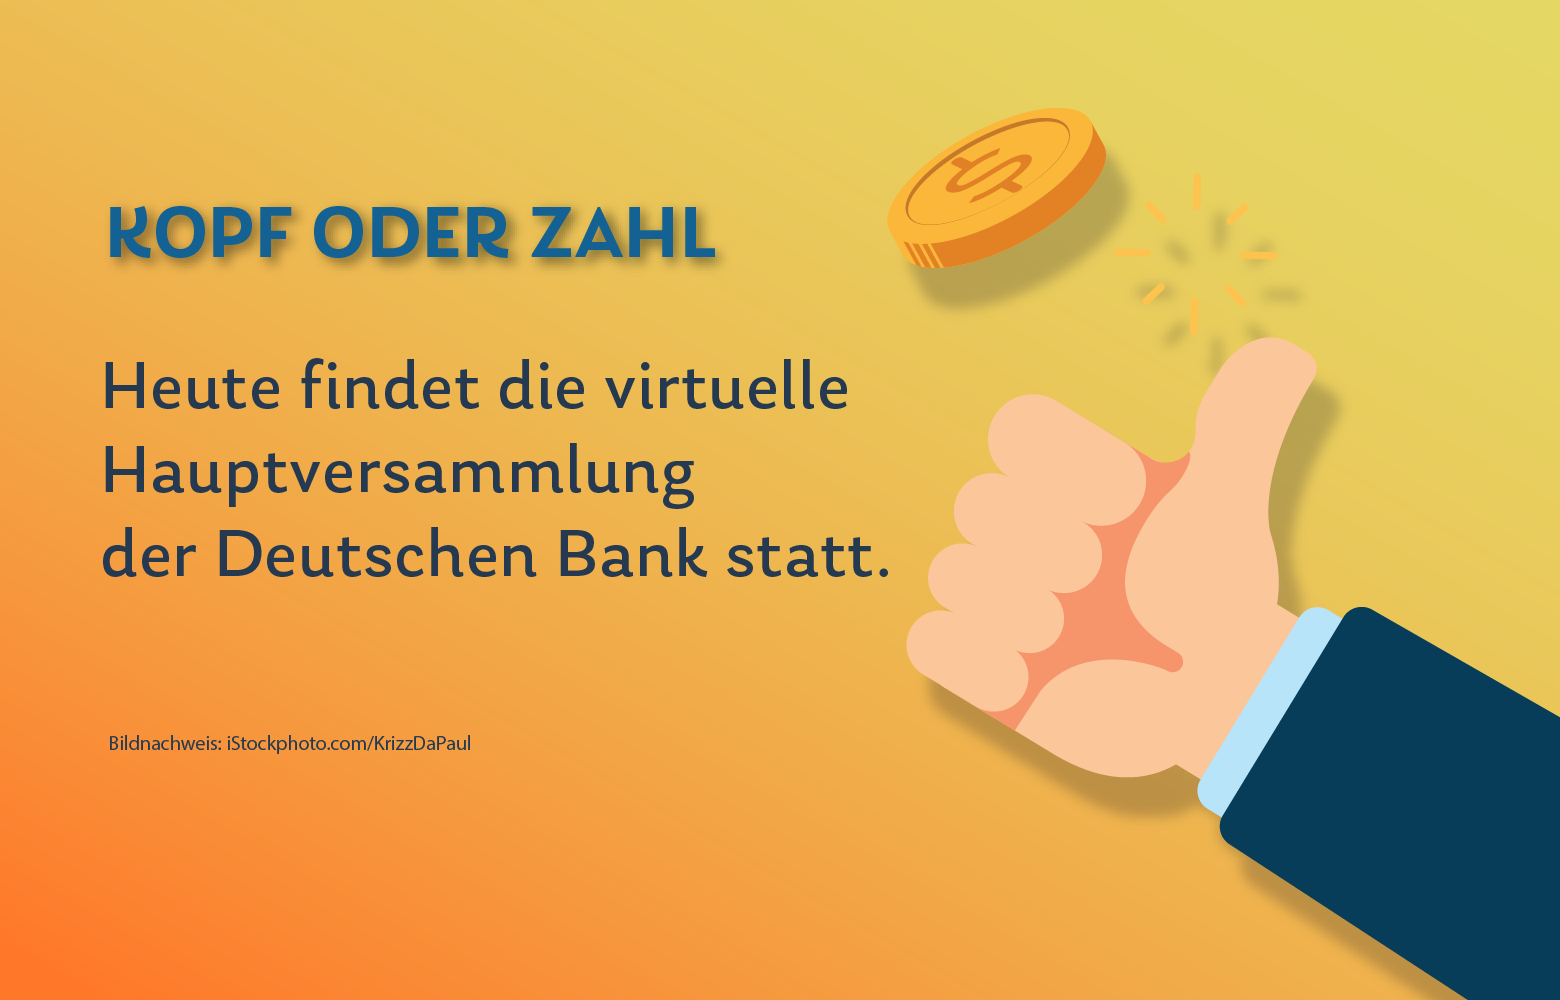 Deutsche Bank Hauptversammlung Findet Zum Ersten Mal Virtuell Statt